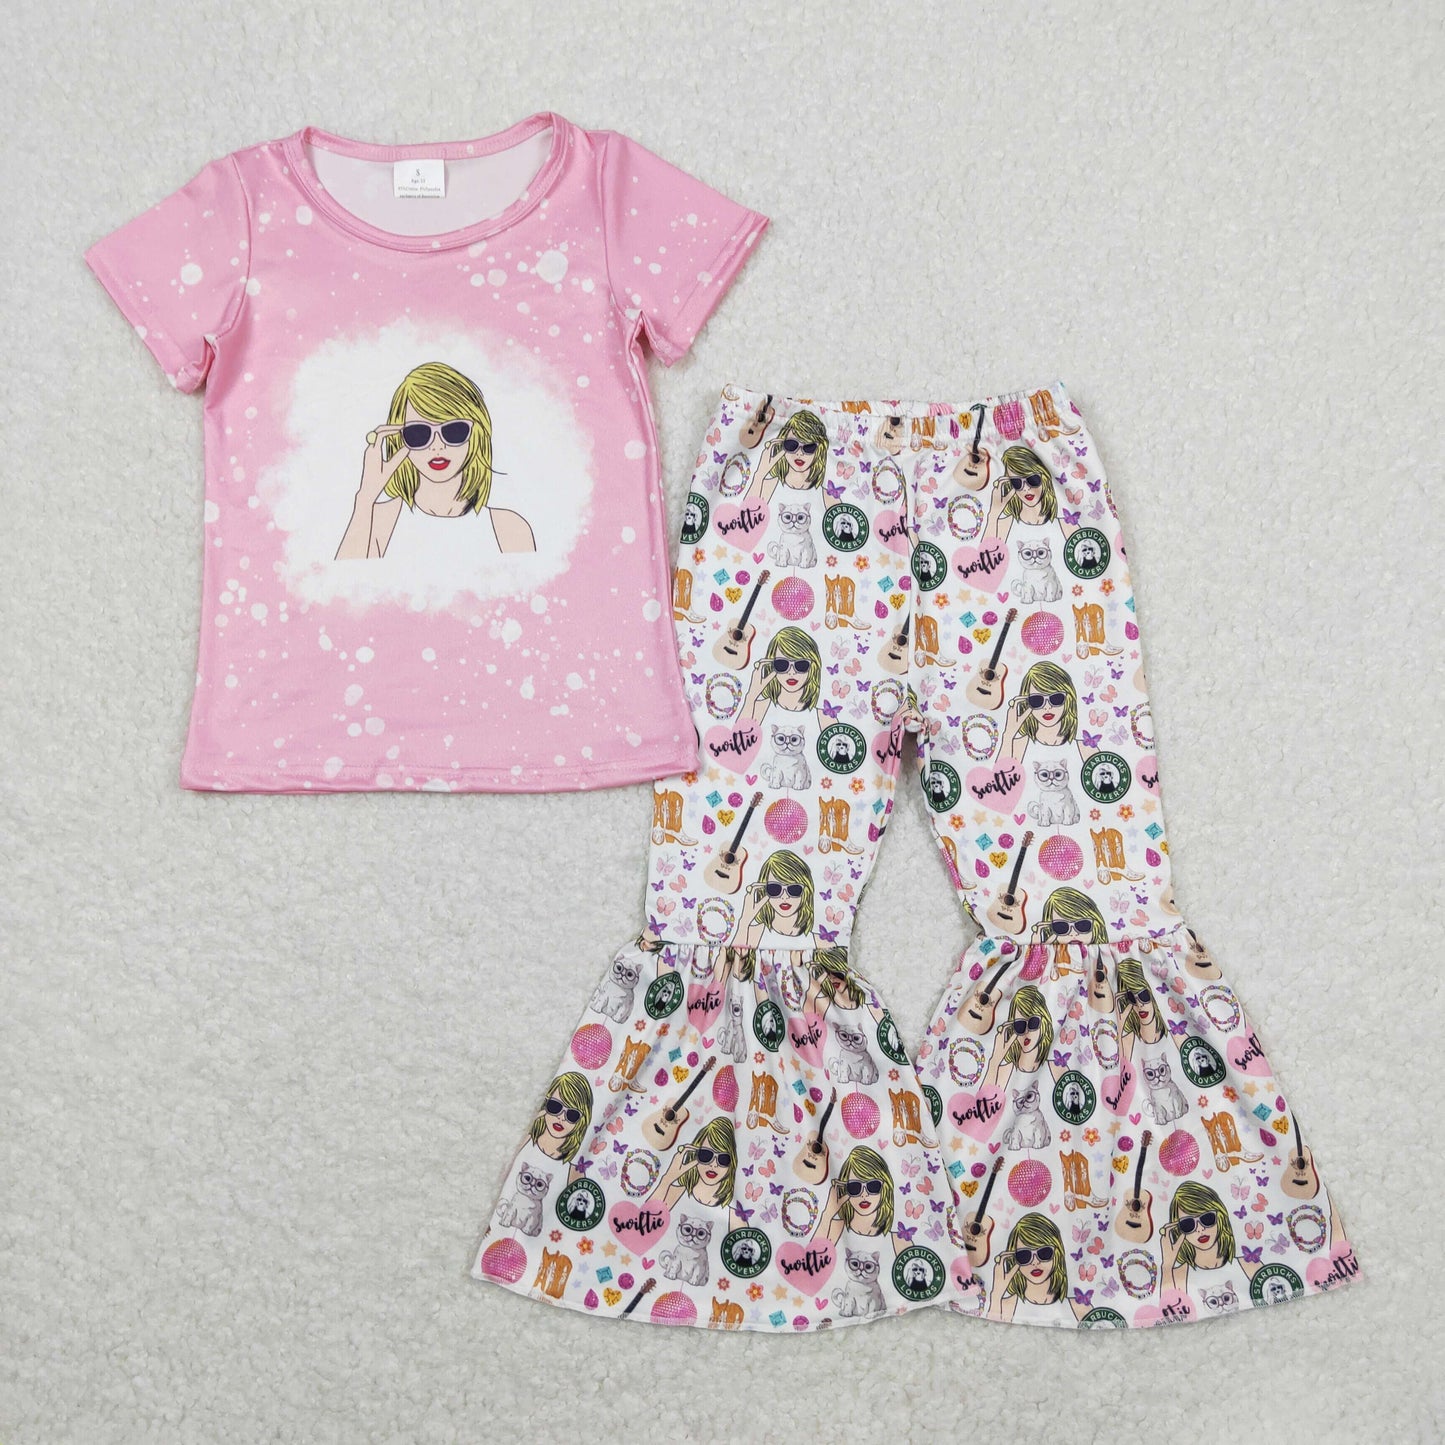 Girls Bell Bottom Pants Set Swiftie Singer Fans Print Outfit